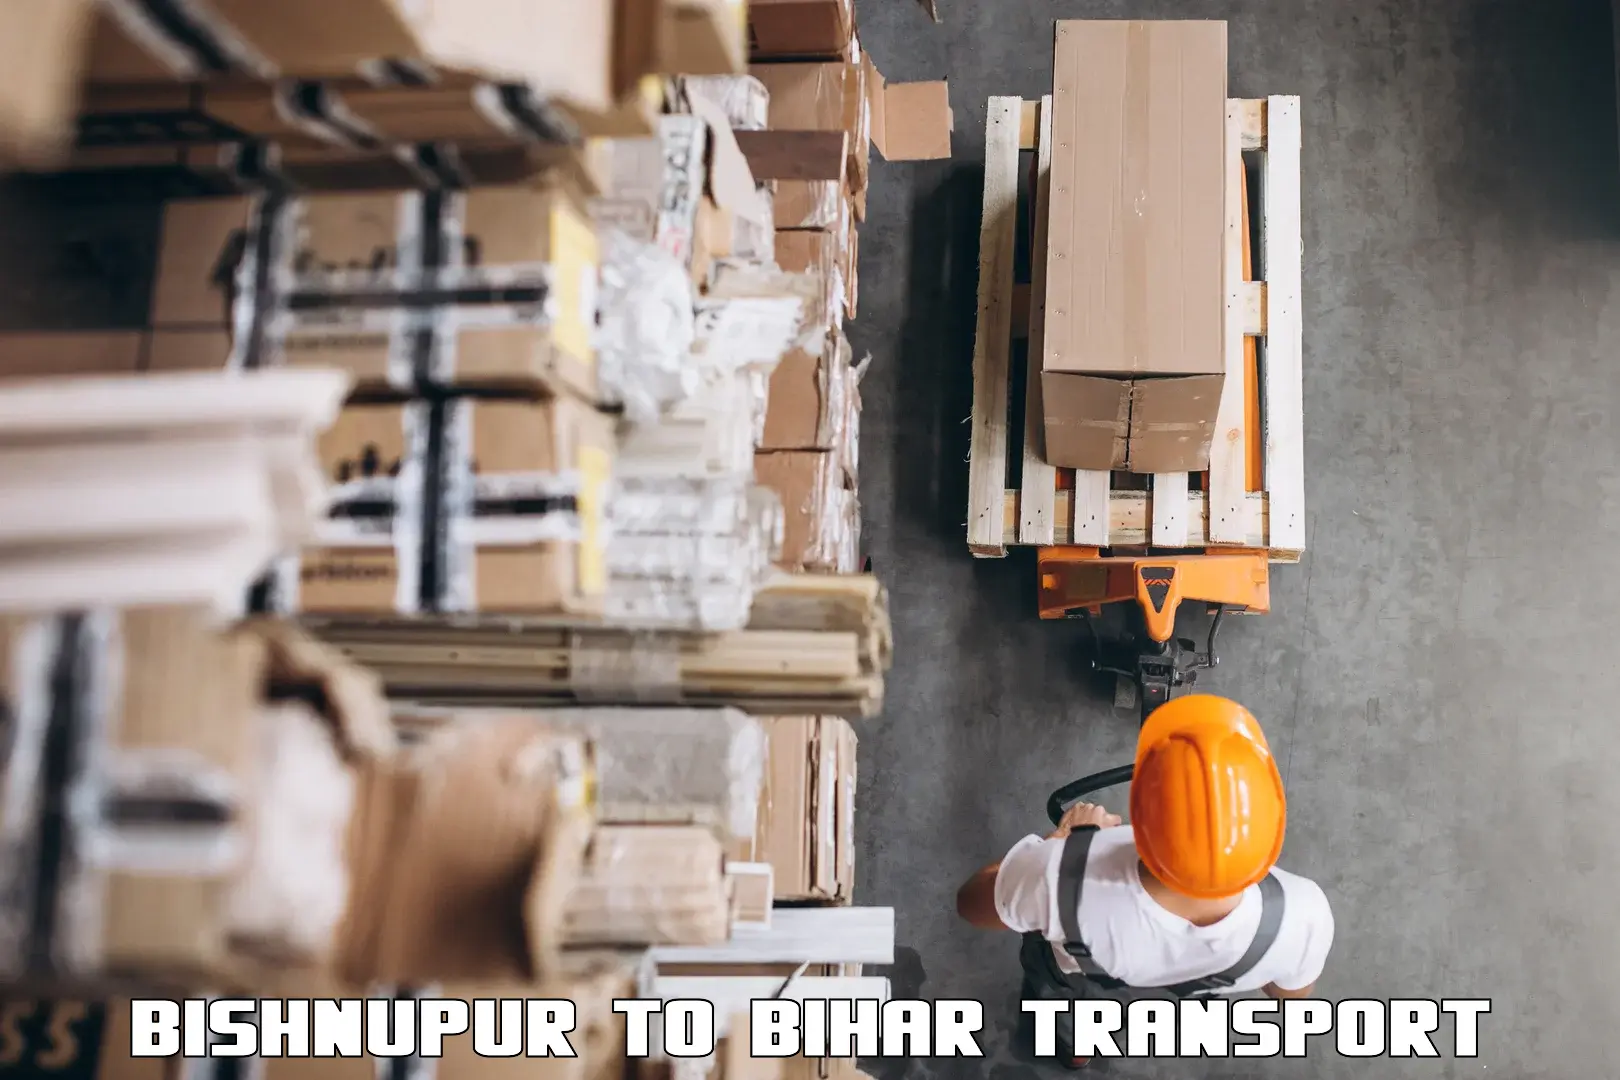 Furniture transport service Bishnupur to Chakai